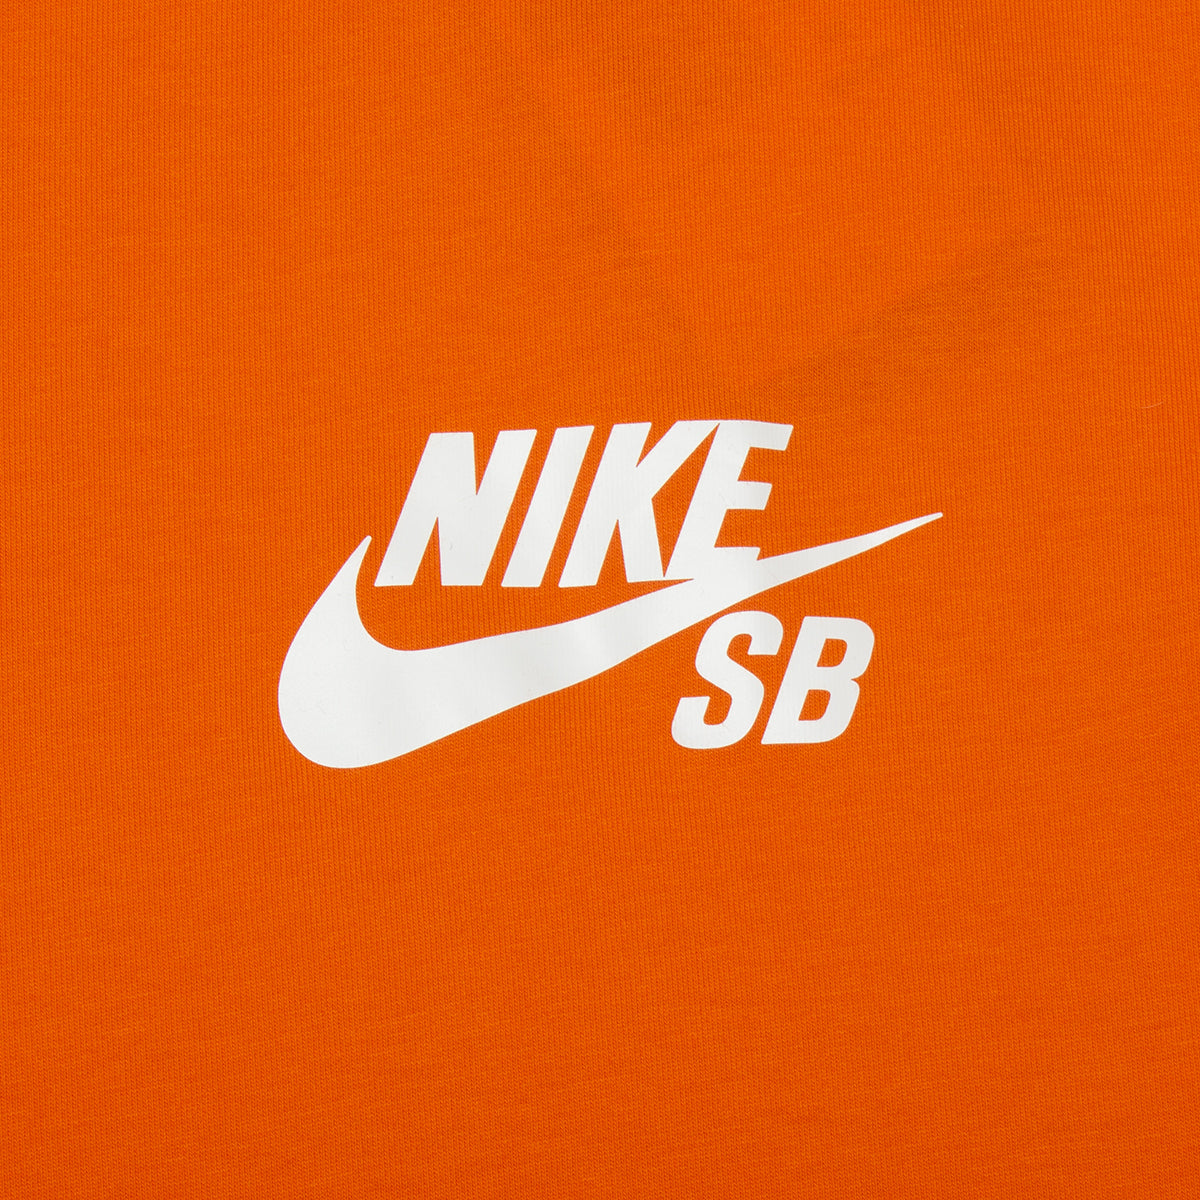 Nike SB Logo T-Shirt Style # DC7817-819 Color : Safety Orange